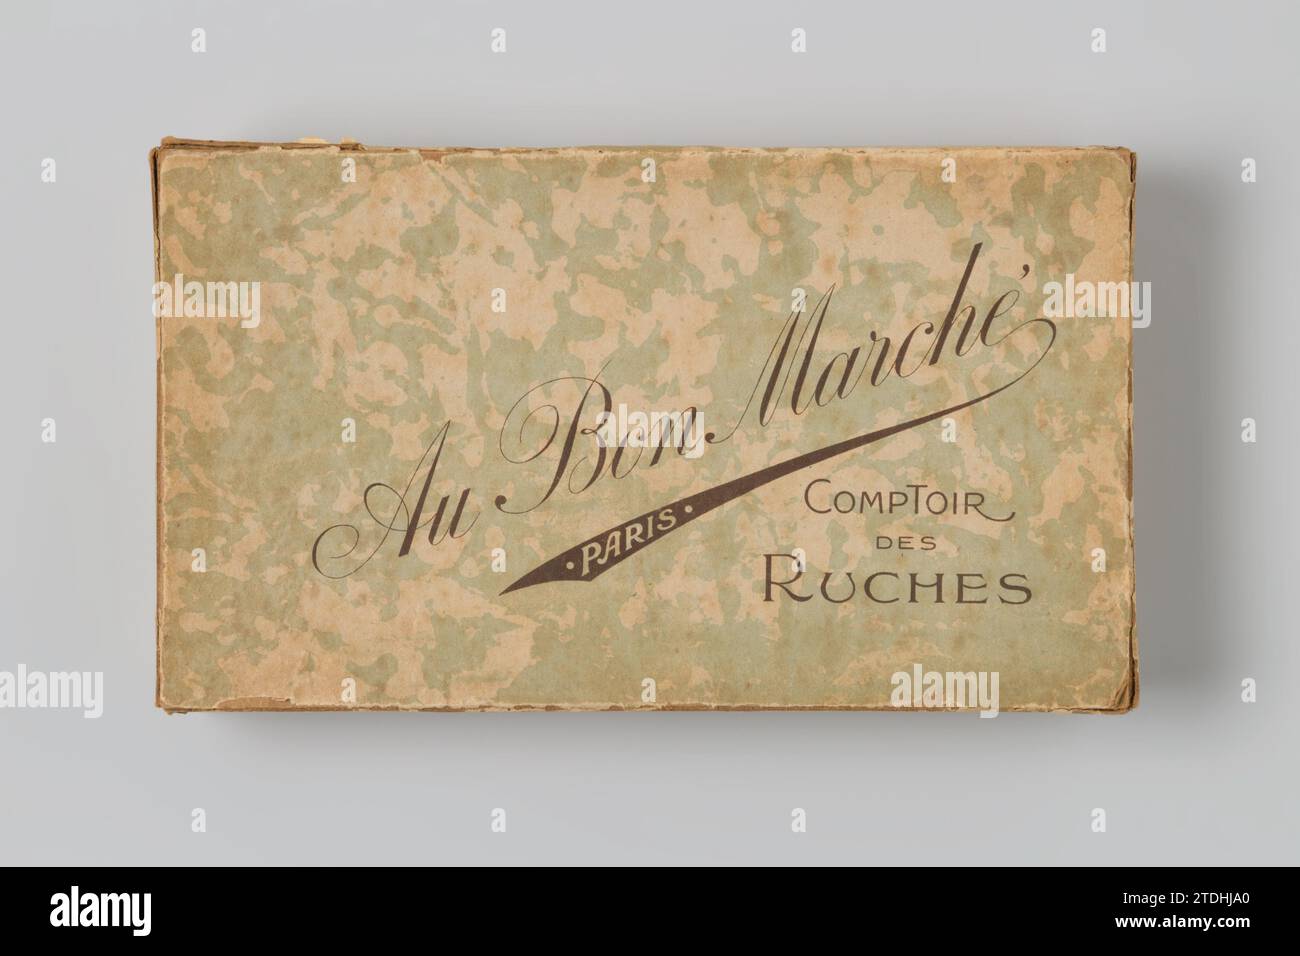 Boîte avec couvercle en carton recouvert de papier arrosé, c. 1890 - c. 1930 boîte avec couvercle en carton recouvert de papier arrosé, à l'intérieur de la boîte il y a deux rubans roses, fixés dans les coins. Paris doos : carton. Peluches : matériaux textiles boîte avec couvercle en carton recouvert de papier arrosé, à l'intérieur de la boîte il y a deux rubans roses, fixés dans les coins. Paris doos : carton. peluches : matières textiles Banque D'Images